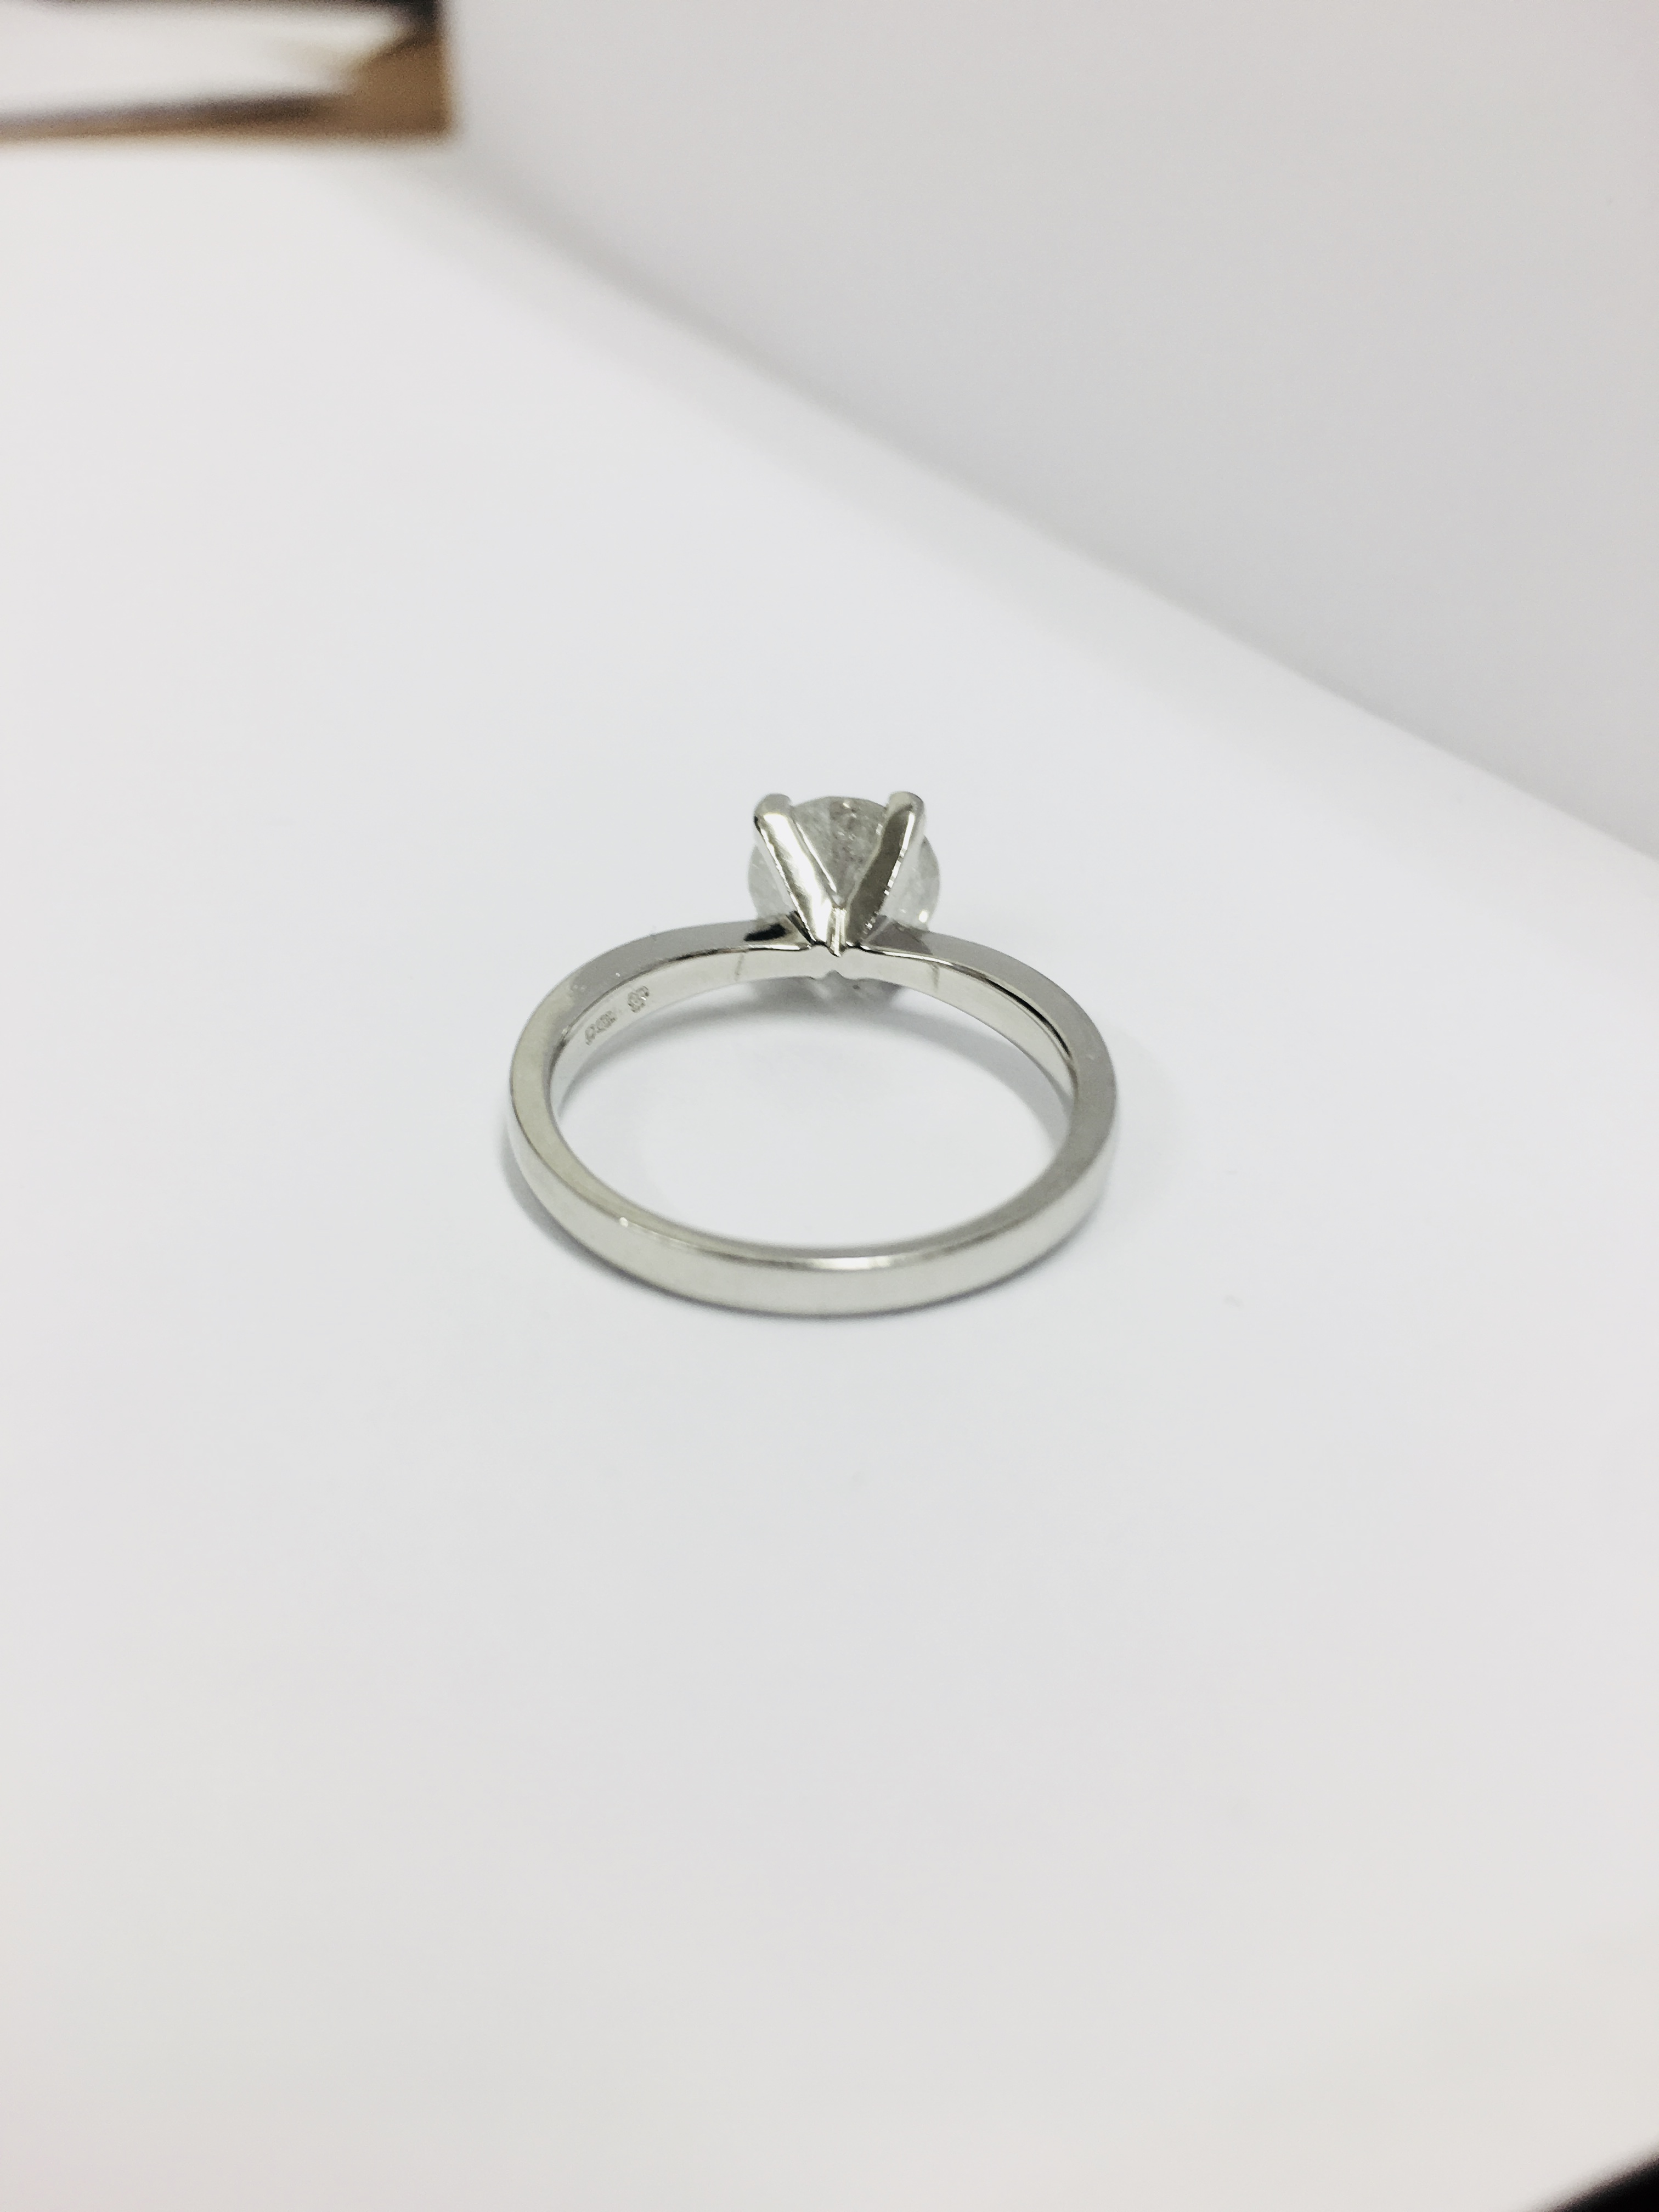 1.50ct diamond solitaire ring set in platinum - Image 15 of 35